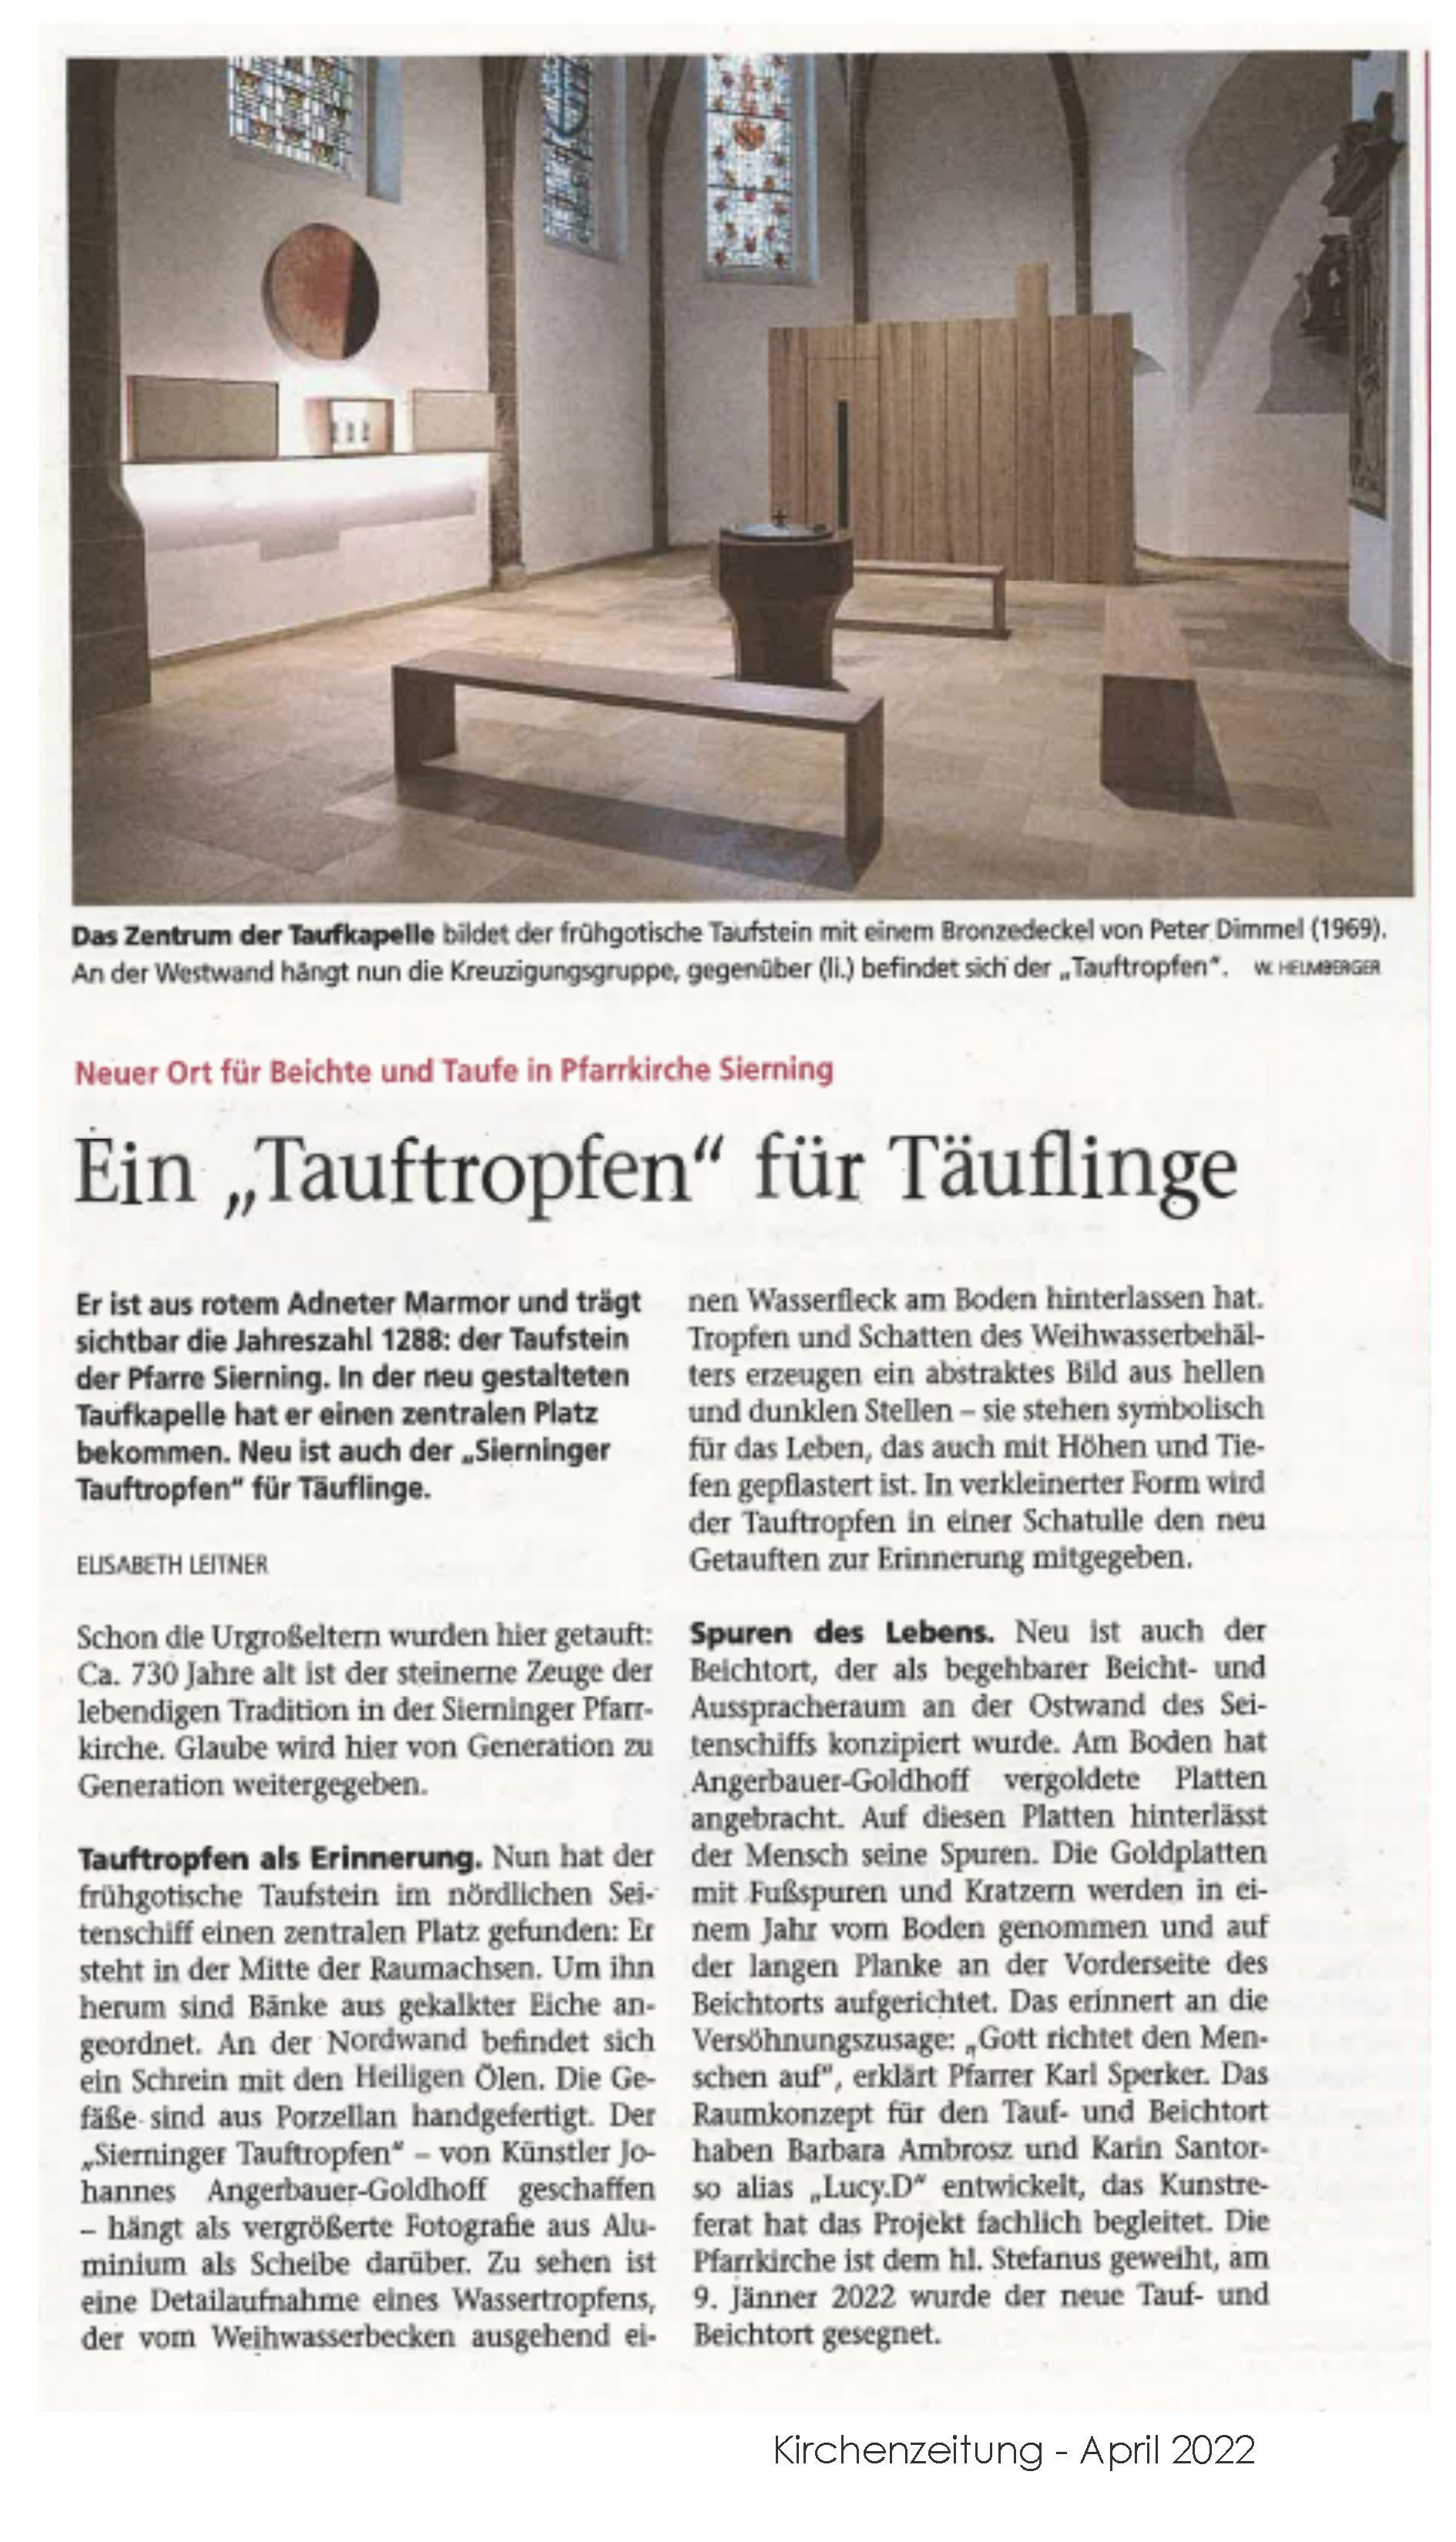 Kirchenzeitung Tauftropfen Pfarrkirche Sierning